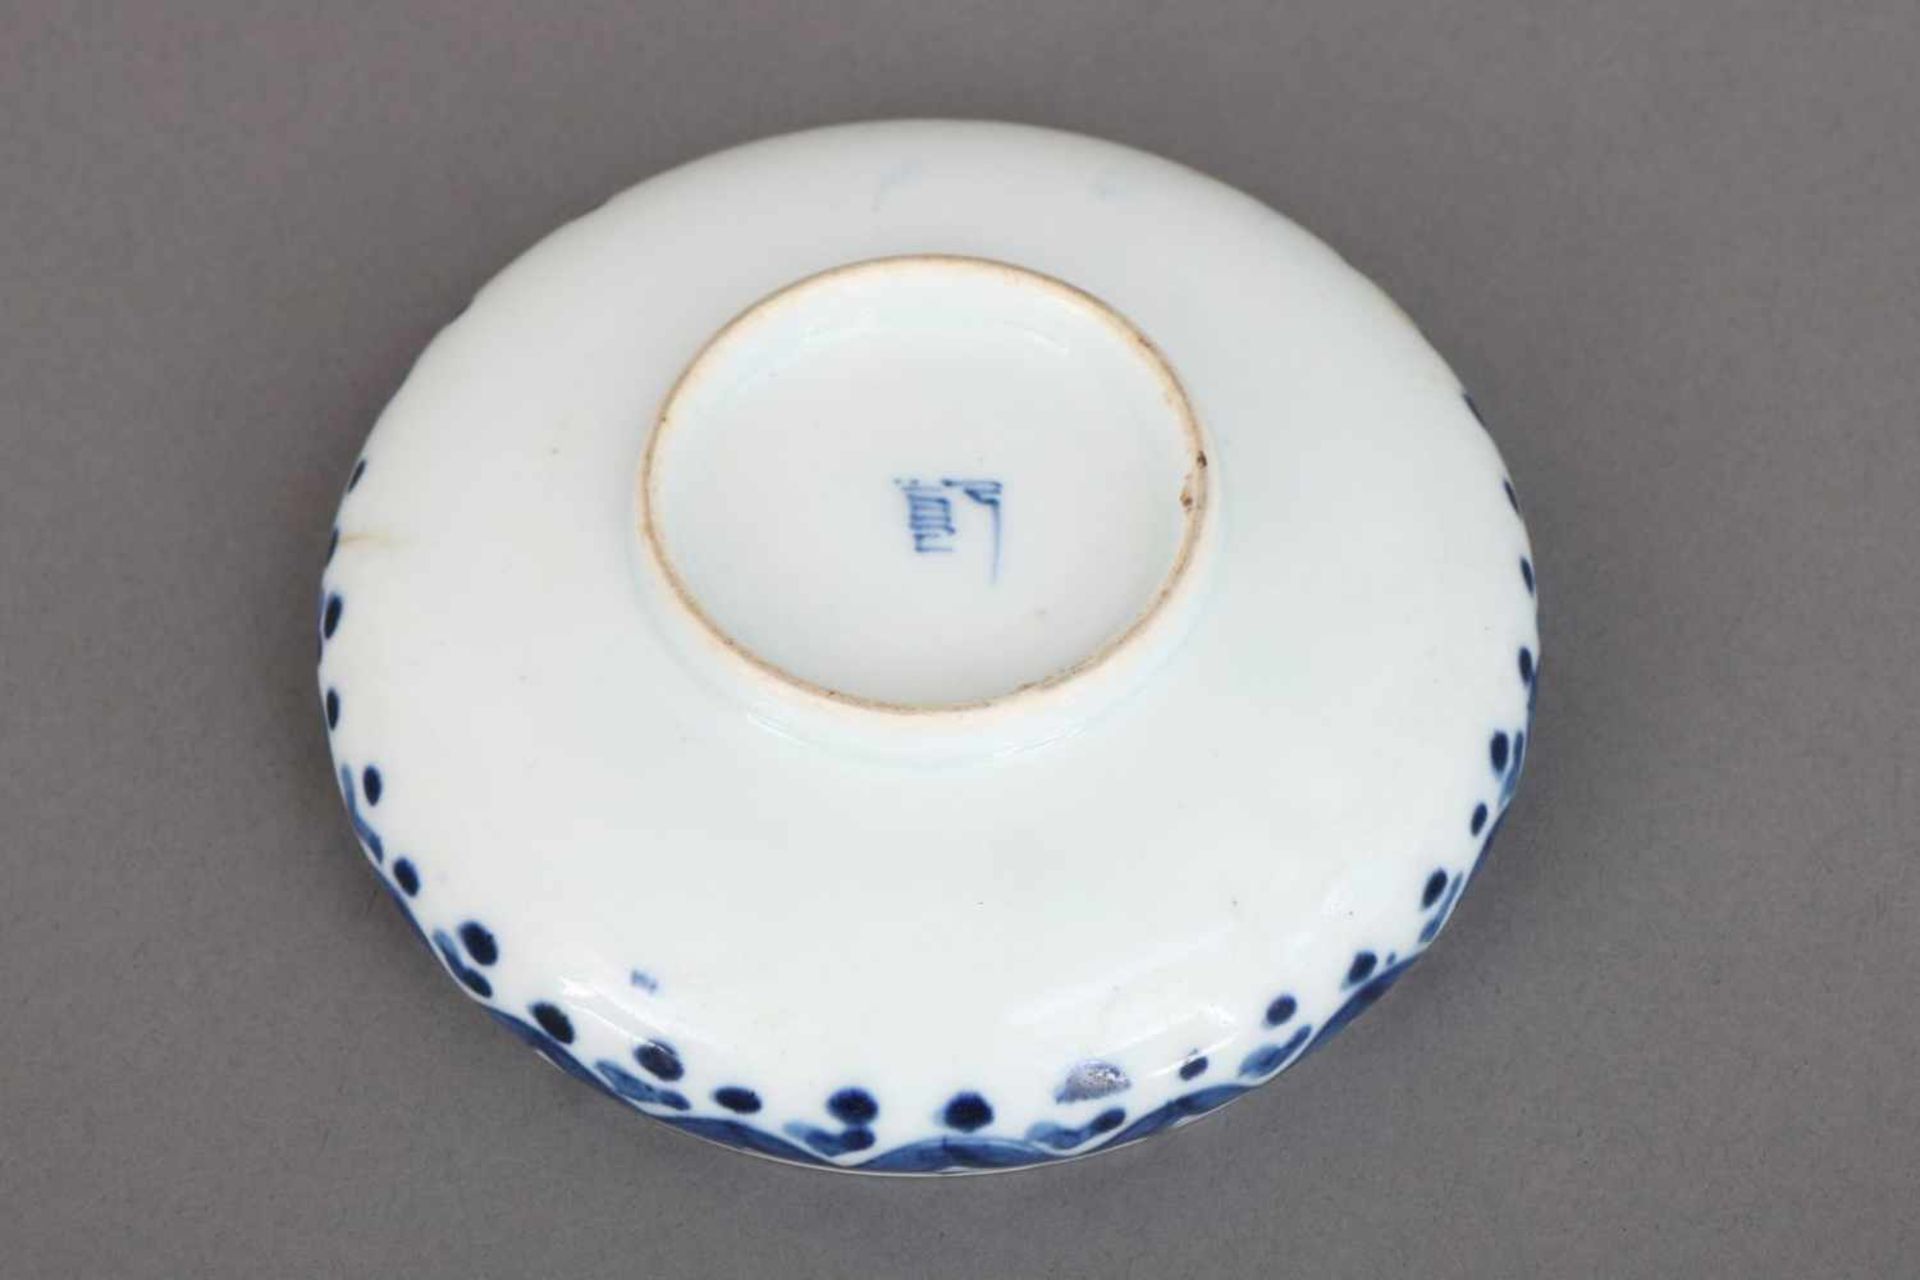 Chinesische Porzellanschalerunde Schale auf kurzem Standring, hell glasiert, blaue - Bild 2 aus 3